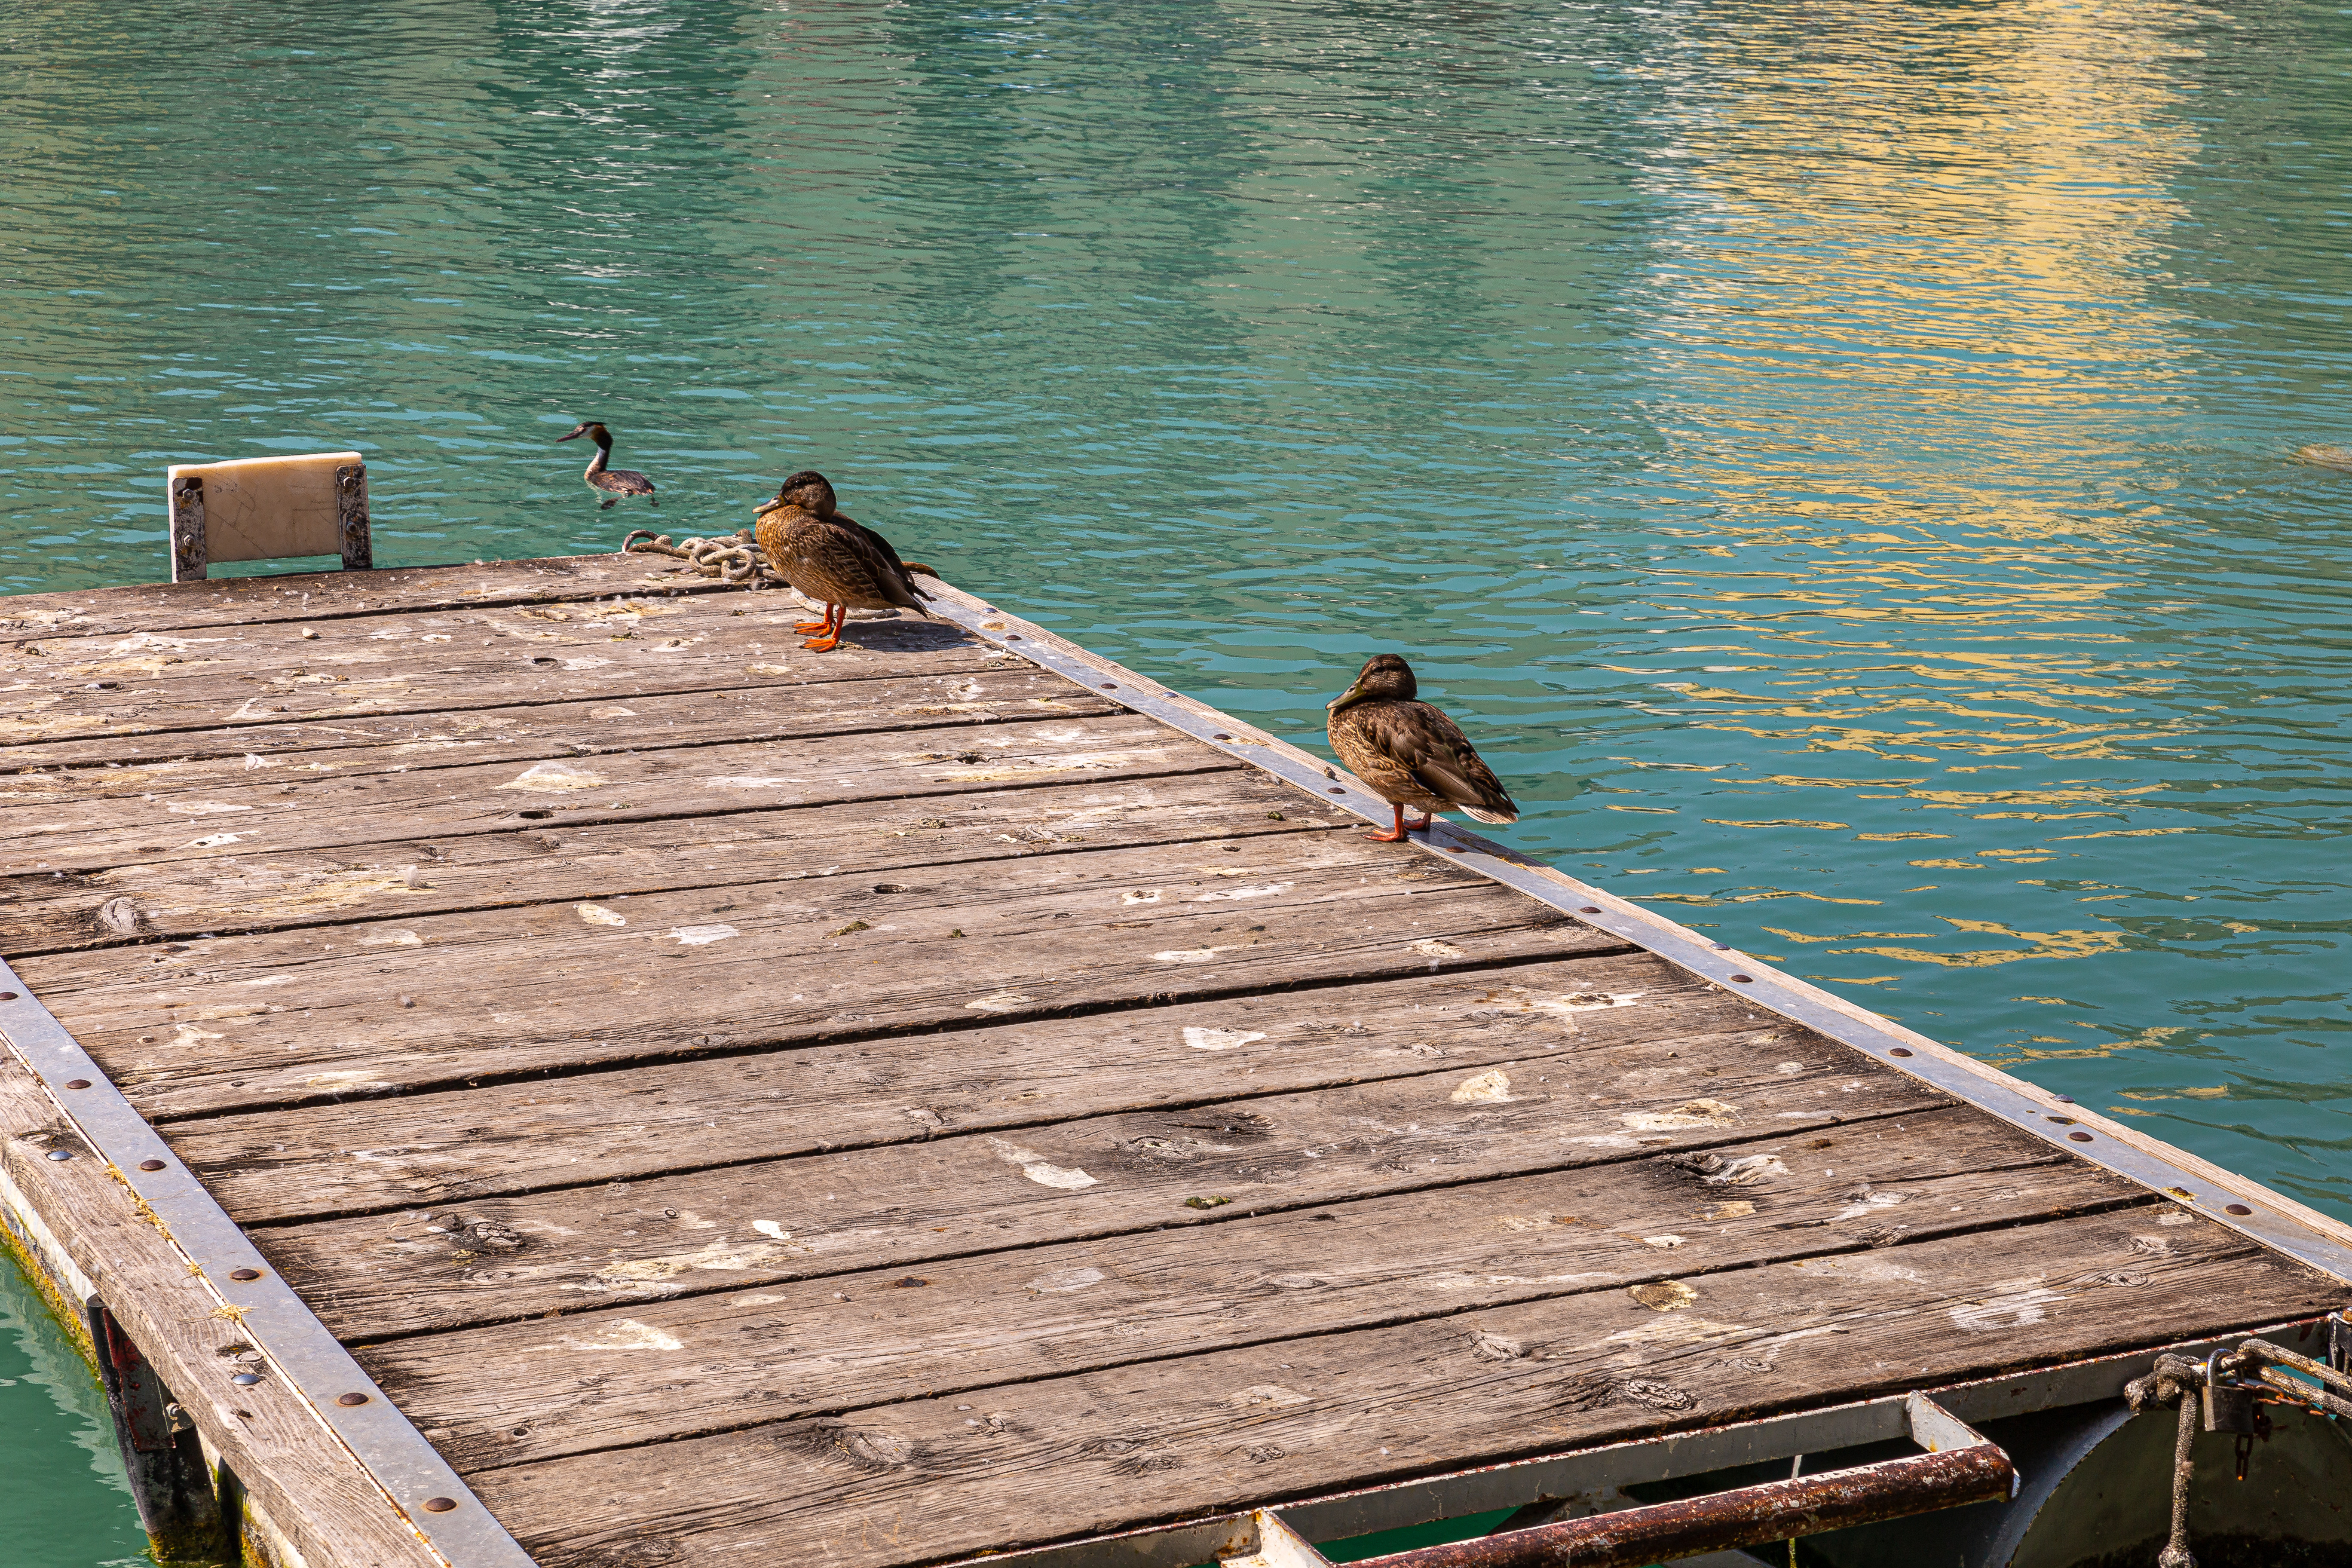 Nivelul de apă foarte scăzut al lacului Garda, Italia, șochează turiștii. „Apa nu mai era acolo” | GALERIE FOTO - Imaginea 6